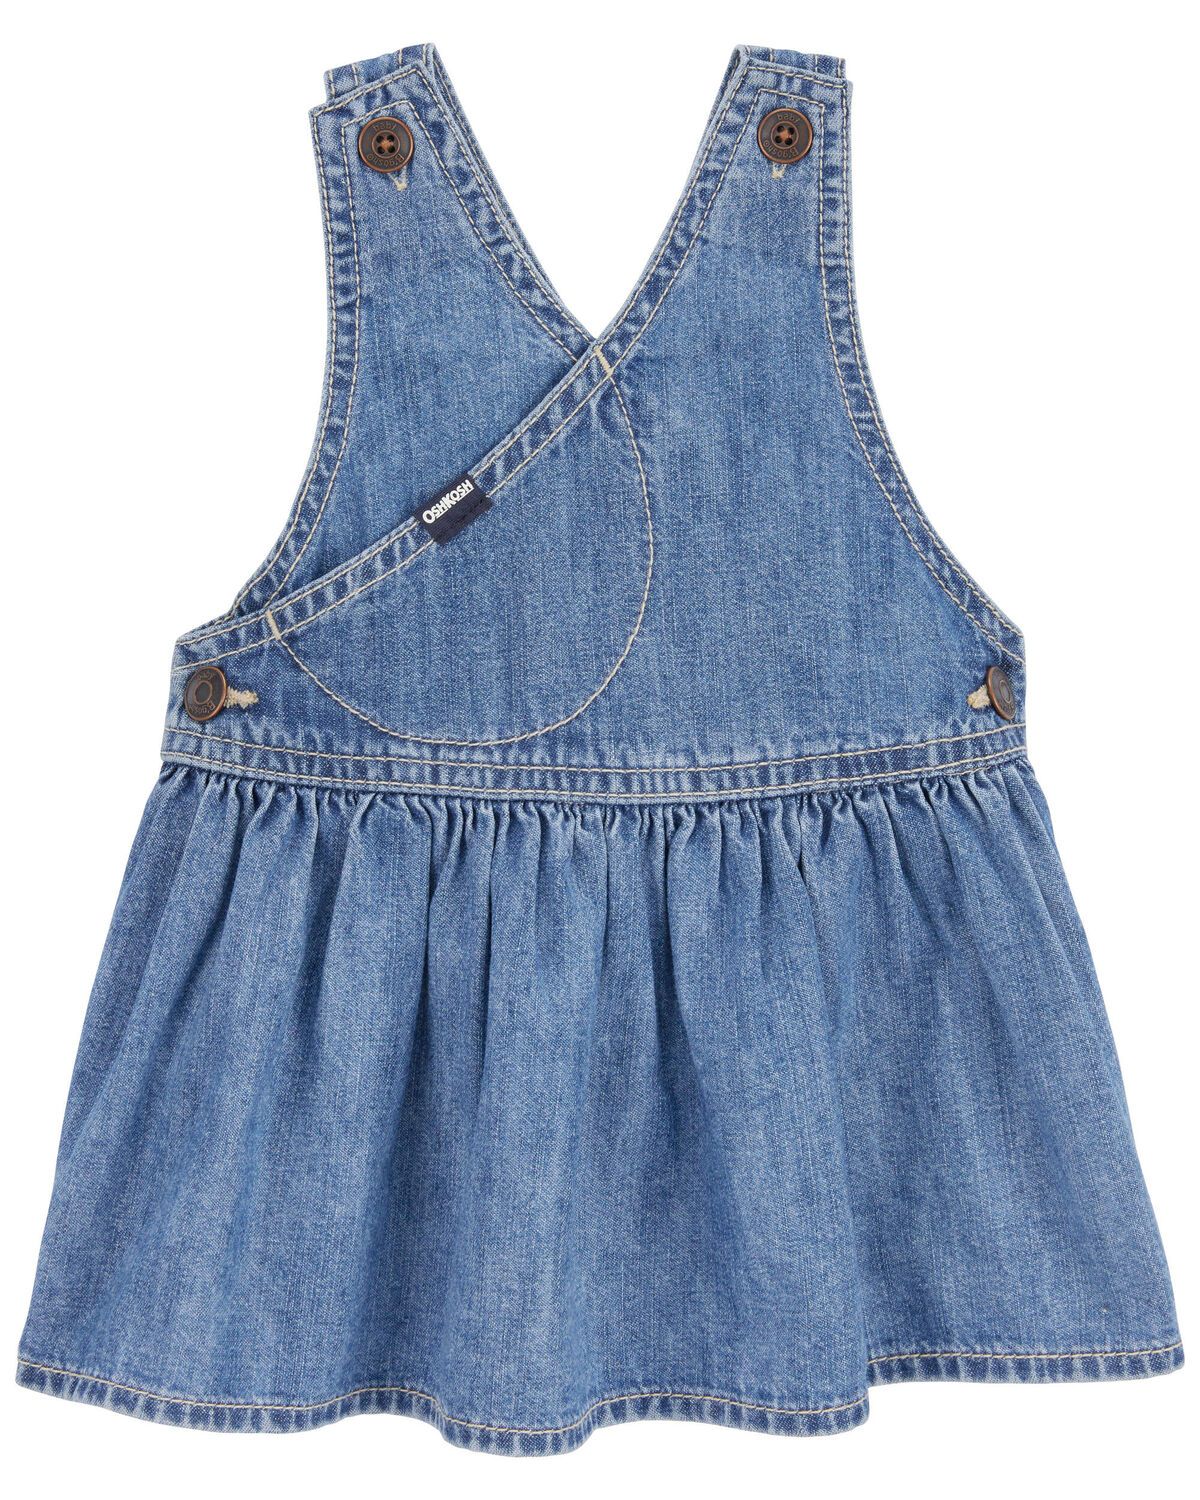 Blue Baby Vintage Inspired Denim Jumper Dress | carters.com | Carter's